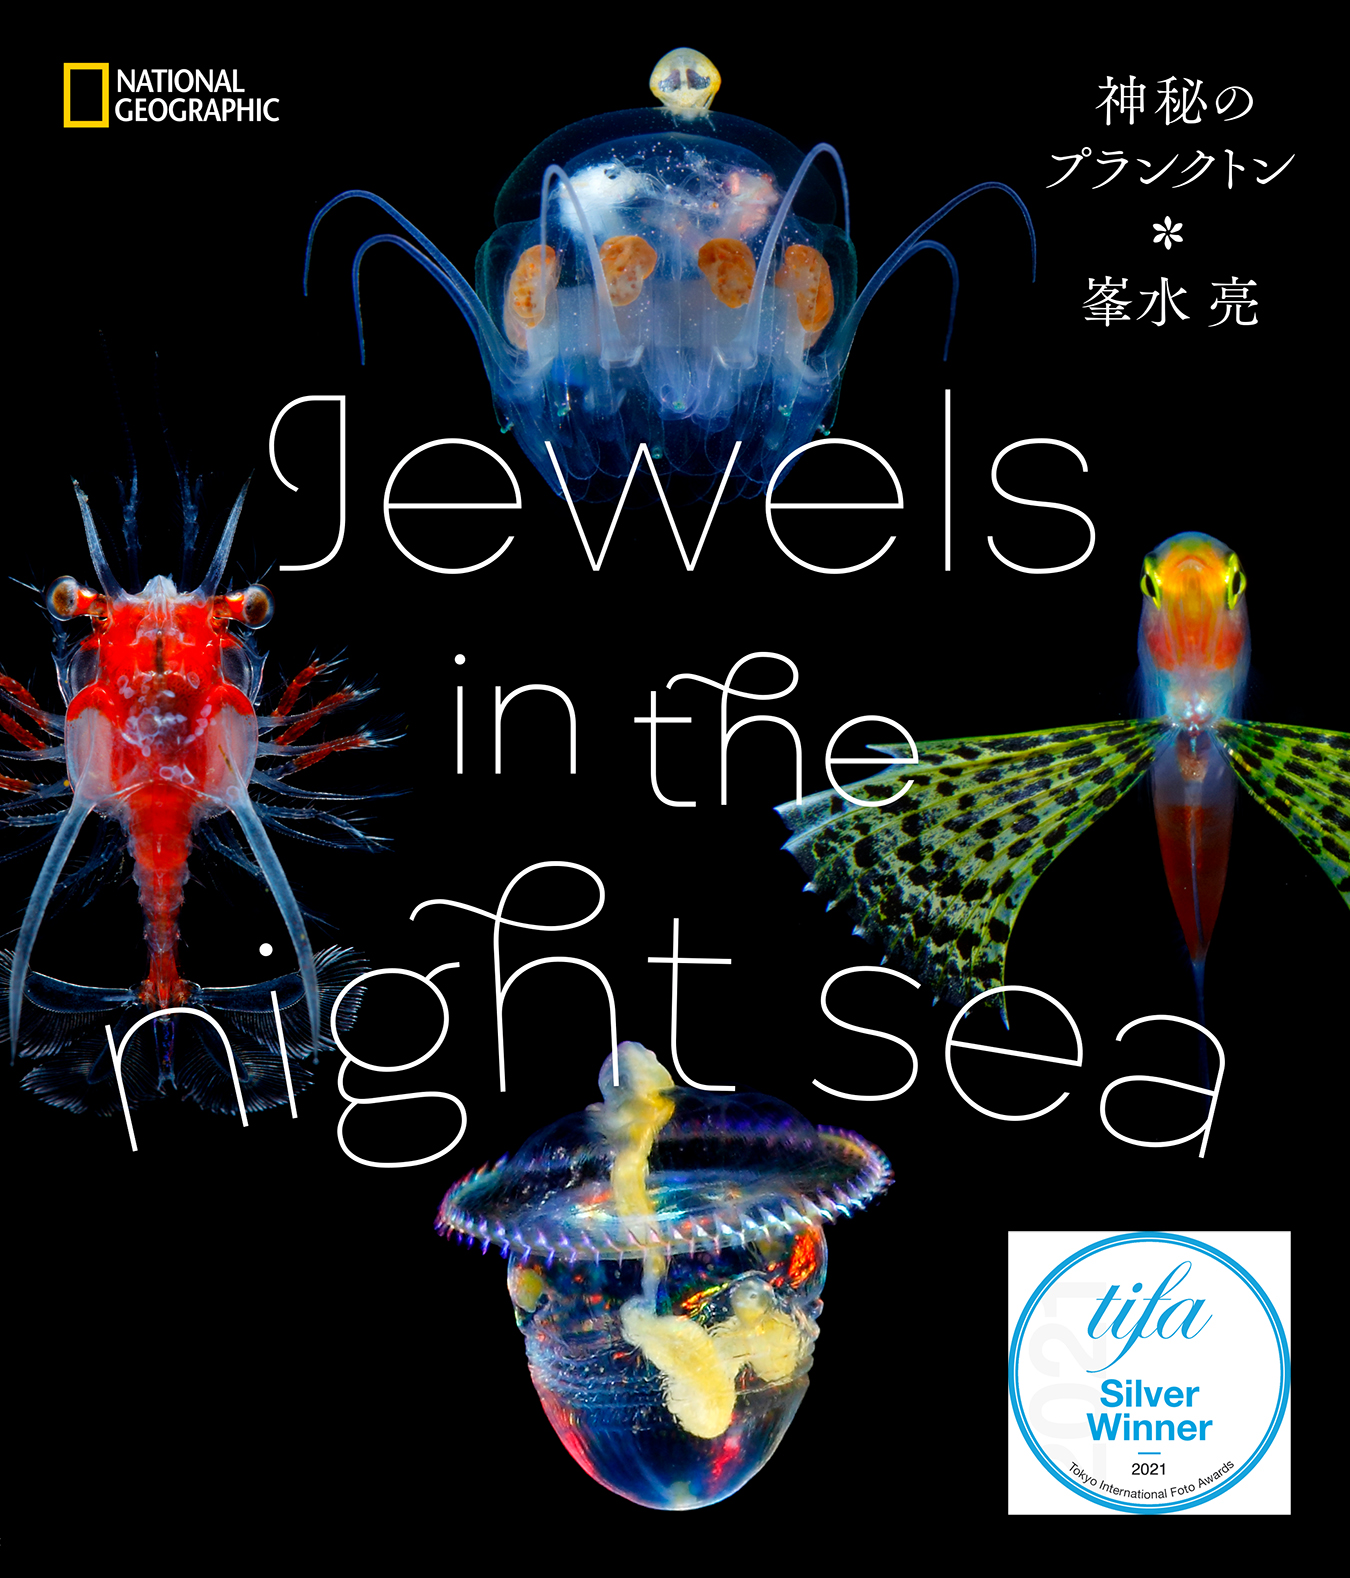 峯水亮さん著『Jewels in the night sea』はSILVER賞を受賞